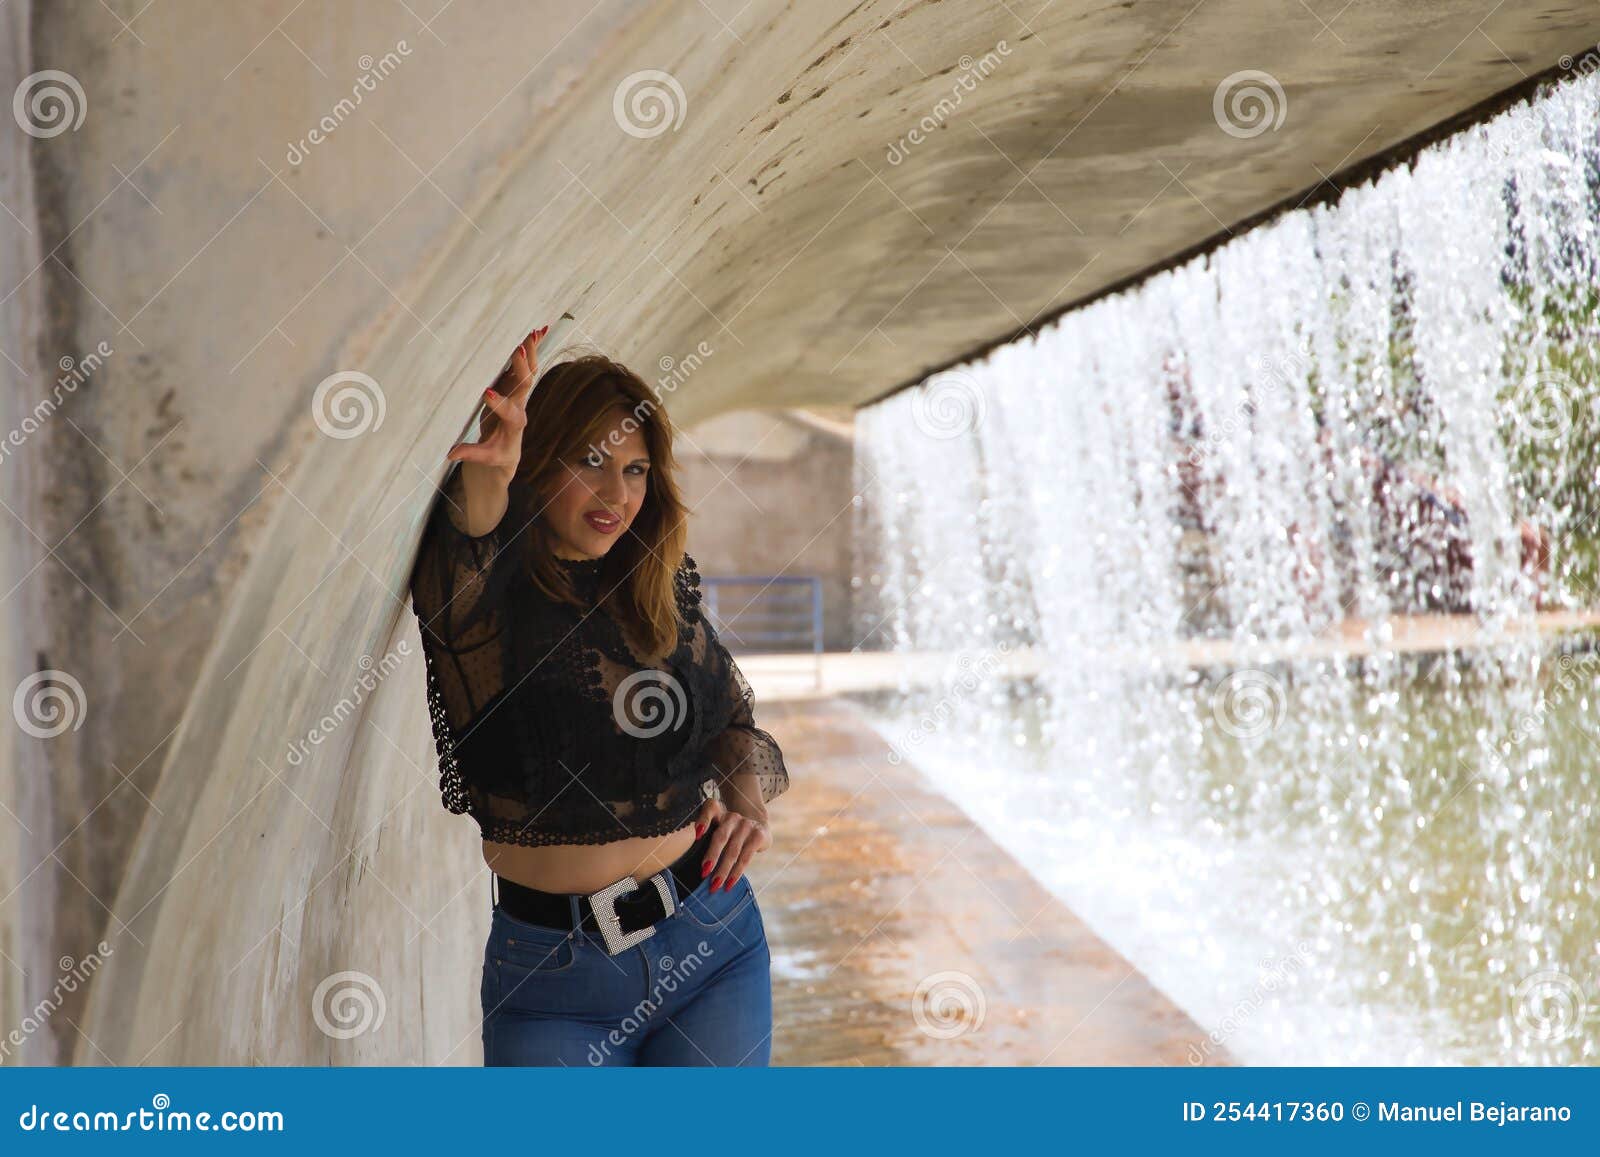 Atractiva Mujer Madura Con Camisa Negra Transparente Y Jeans Posando Al Lado De Una Cascada En Una Actitud Sensual Foto de archivo - Imagen de deseo, 254417360